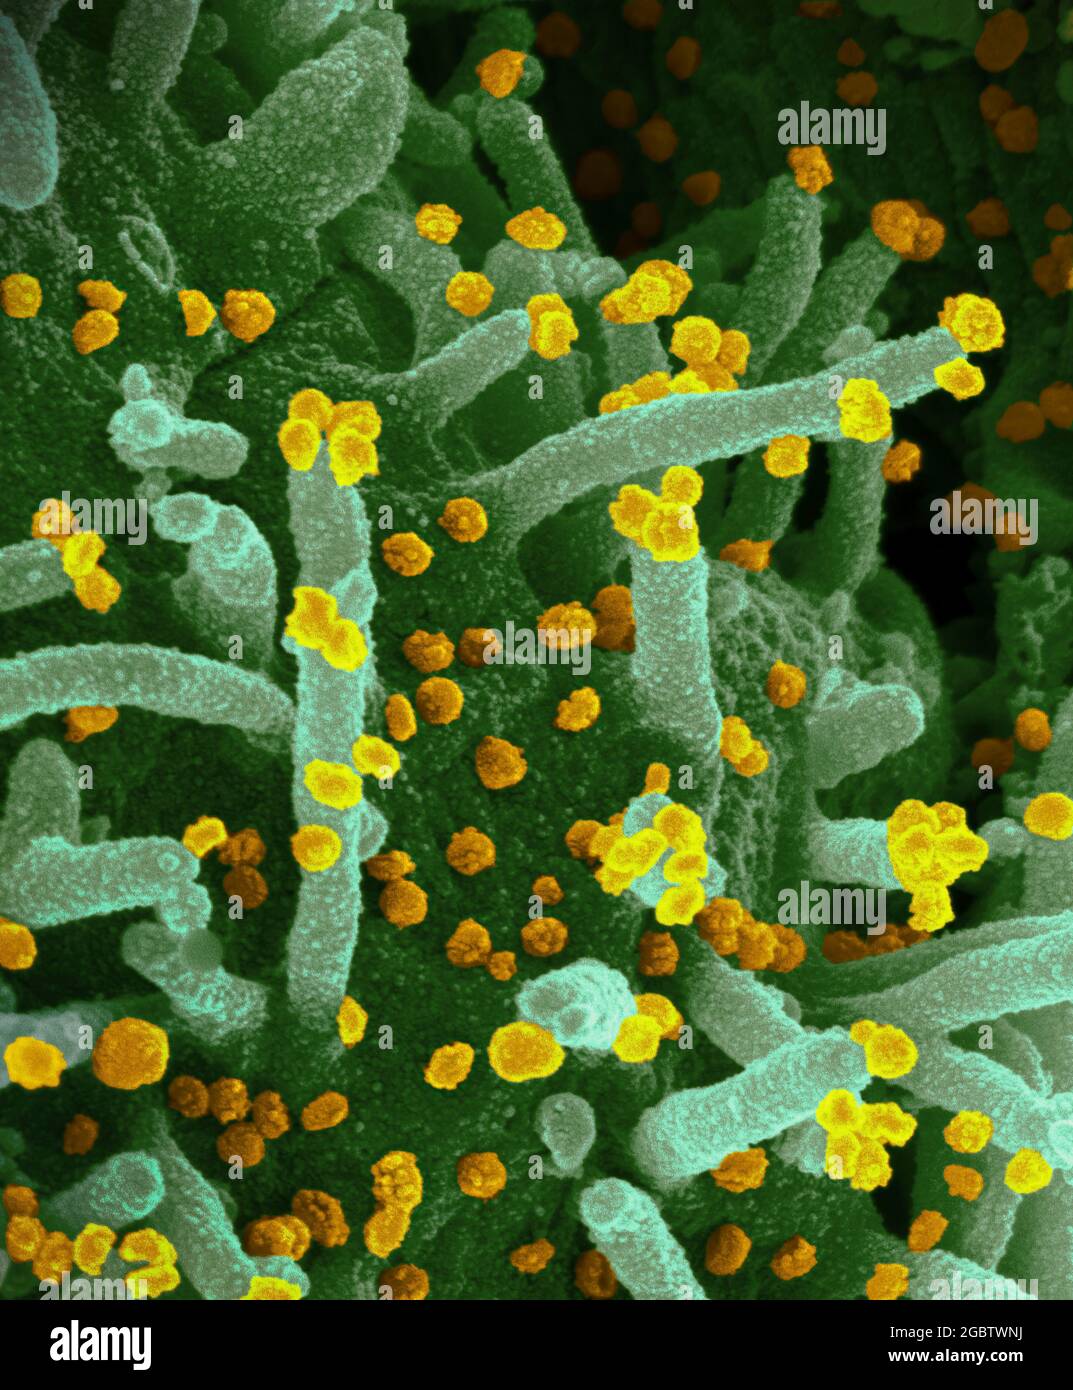 Novel Coronavirus SARS-COV-2 questa immagine al microscopio elettronico a scansione mostra SARS-COV-2 (particelle d'oro rotonde) che emergono dalla superficie di una cellula coltivata nel laboratorio. SARS-COV-2, noto anche come 2019-nCoV, è il virus che causa COVID-19. Immagine catturata e colorata presso i Rocky Mountain Laboratories di Hamilton, Montana. Credito: NIAID Foto Stock